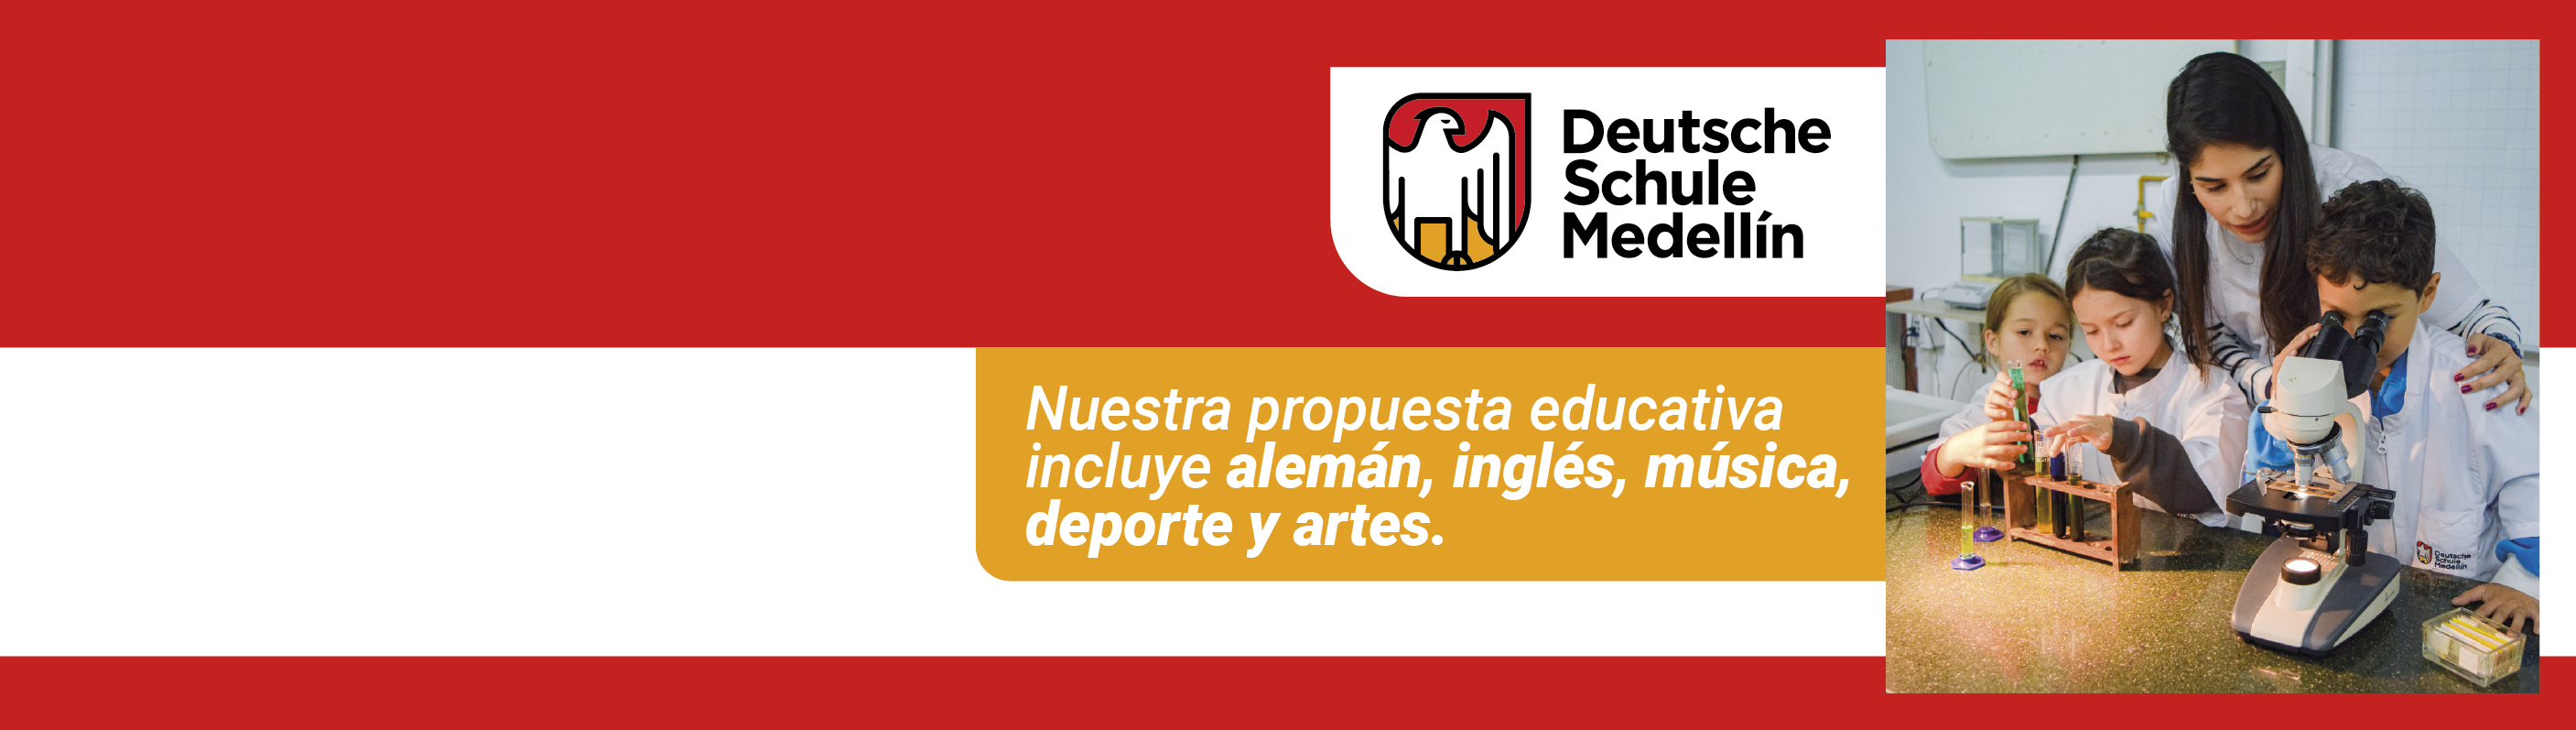 ¡Descubre el Deutsche Schule Medellín!